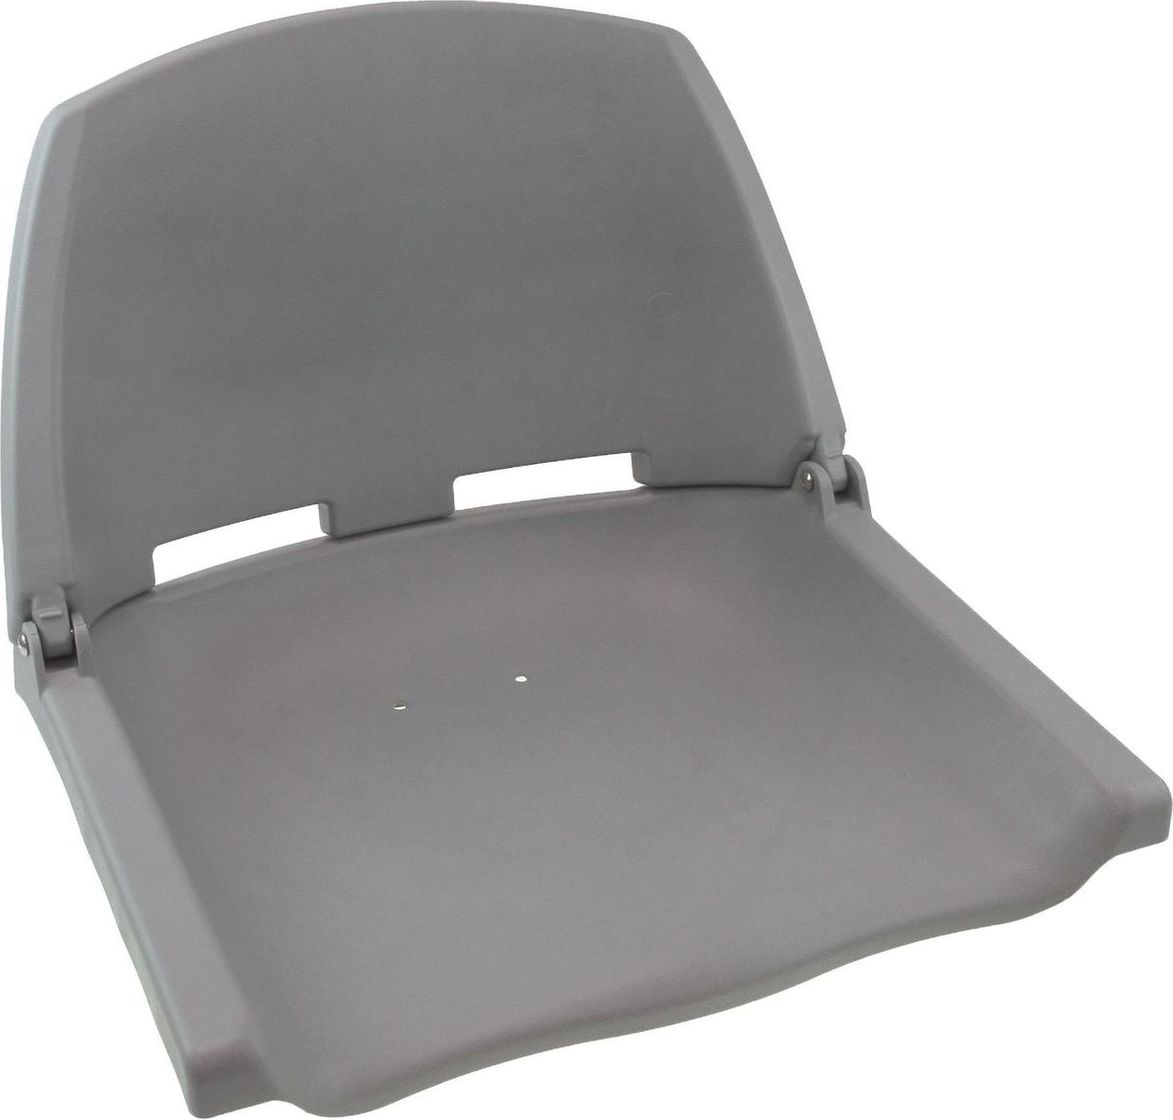 Кресло пластиковое серое (упаковка из 3 шт.) C12503G_pkg_3 кранец easterner надувной 660х180 белый упаковка из 10 шт c11748 pkg 10